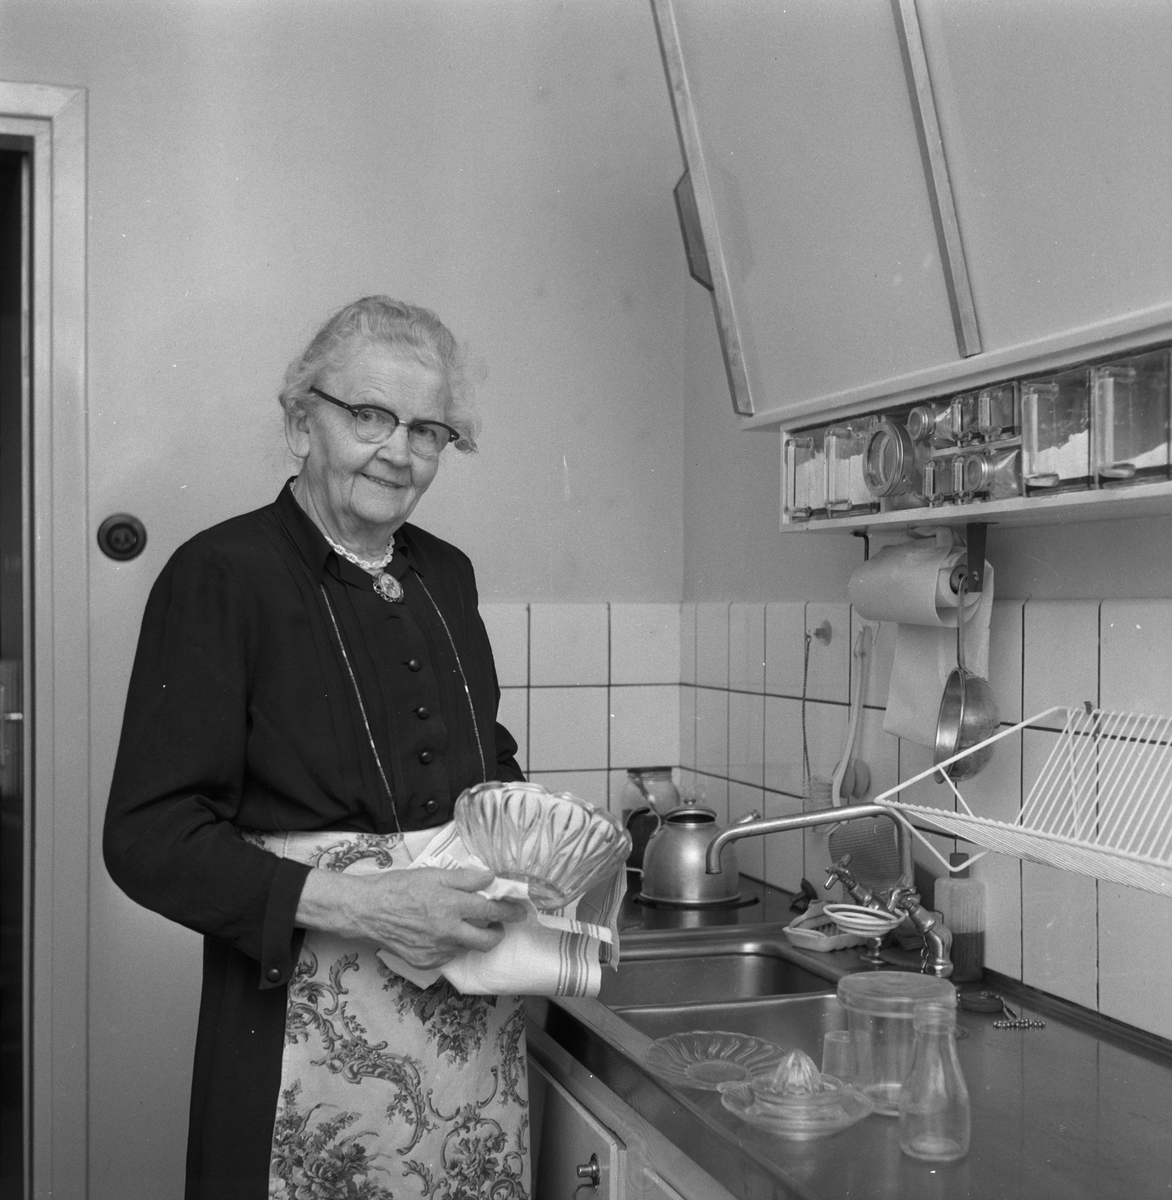 En kvinna i köket.
8 april 1959.